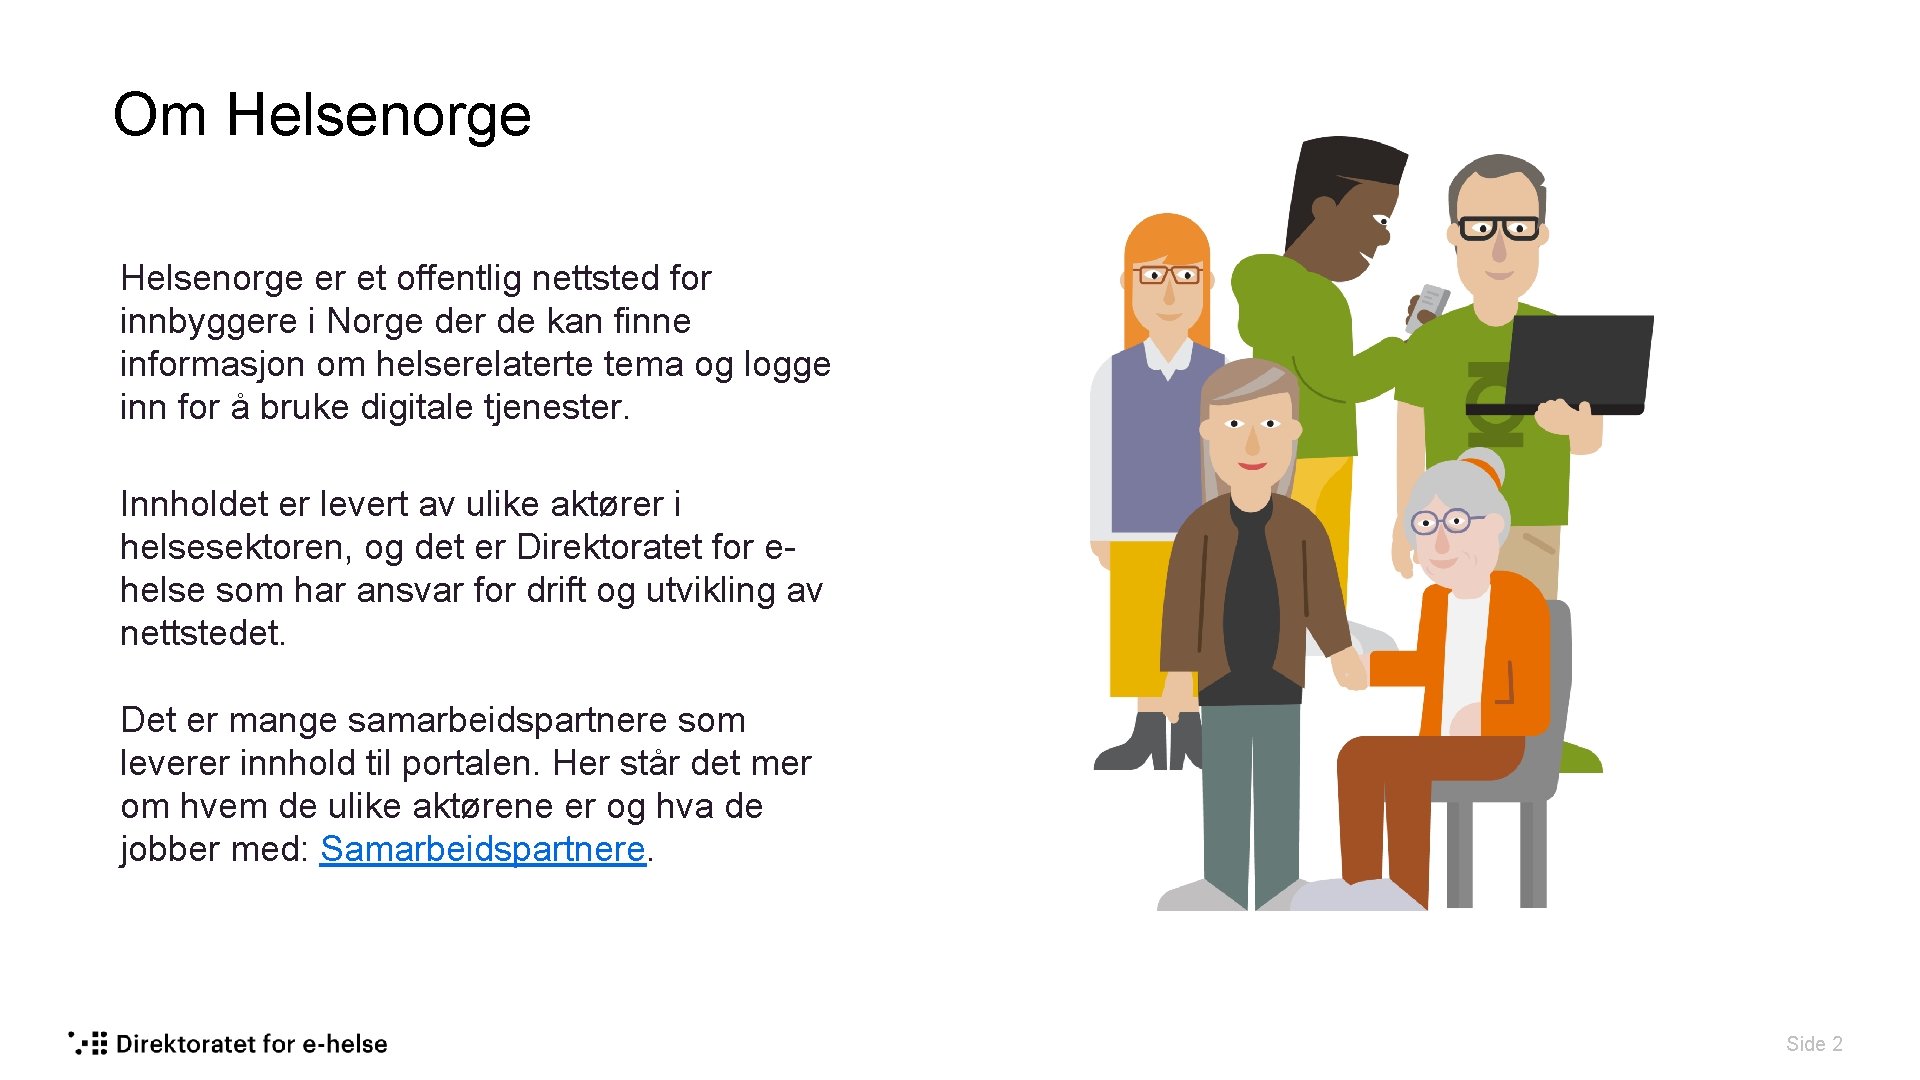 Om Helsenorge er et offentlig nettsted for innbyggere i Norge der de kan finne